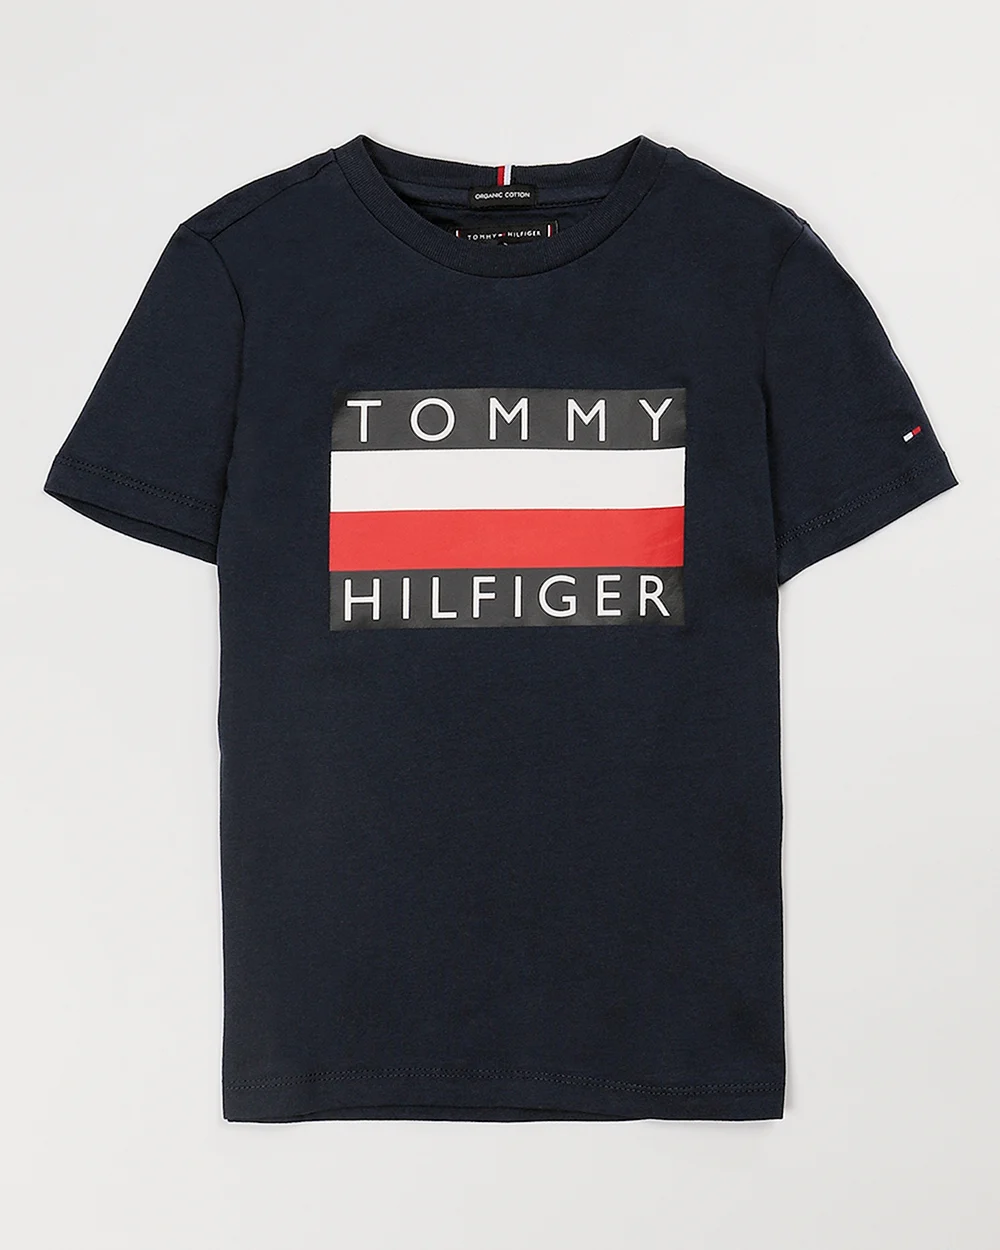 Томми Хилфигер темная футболка